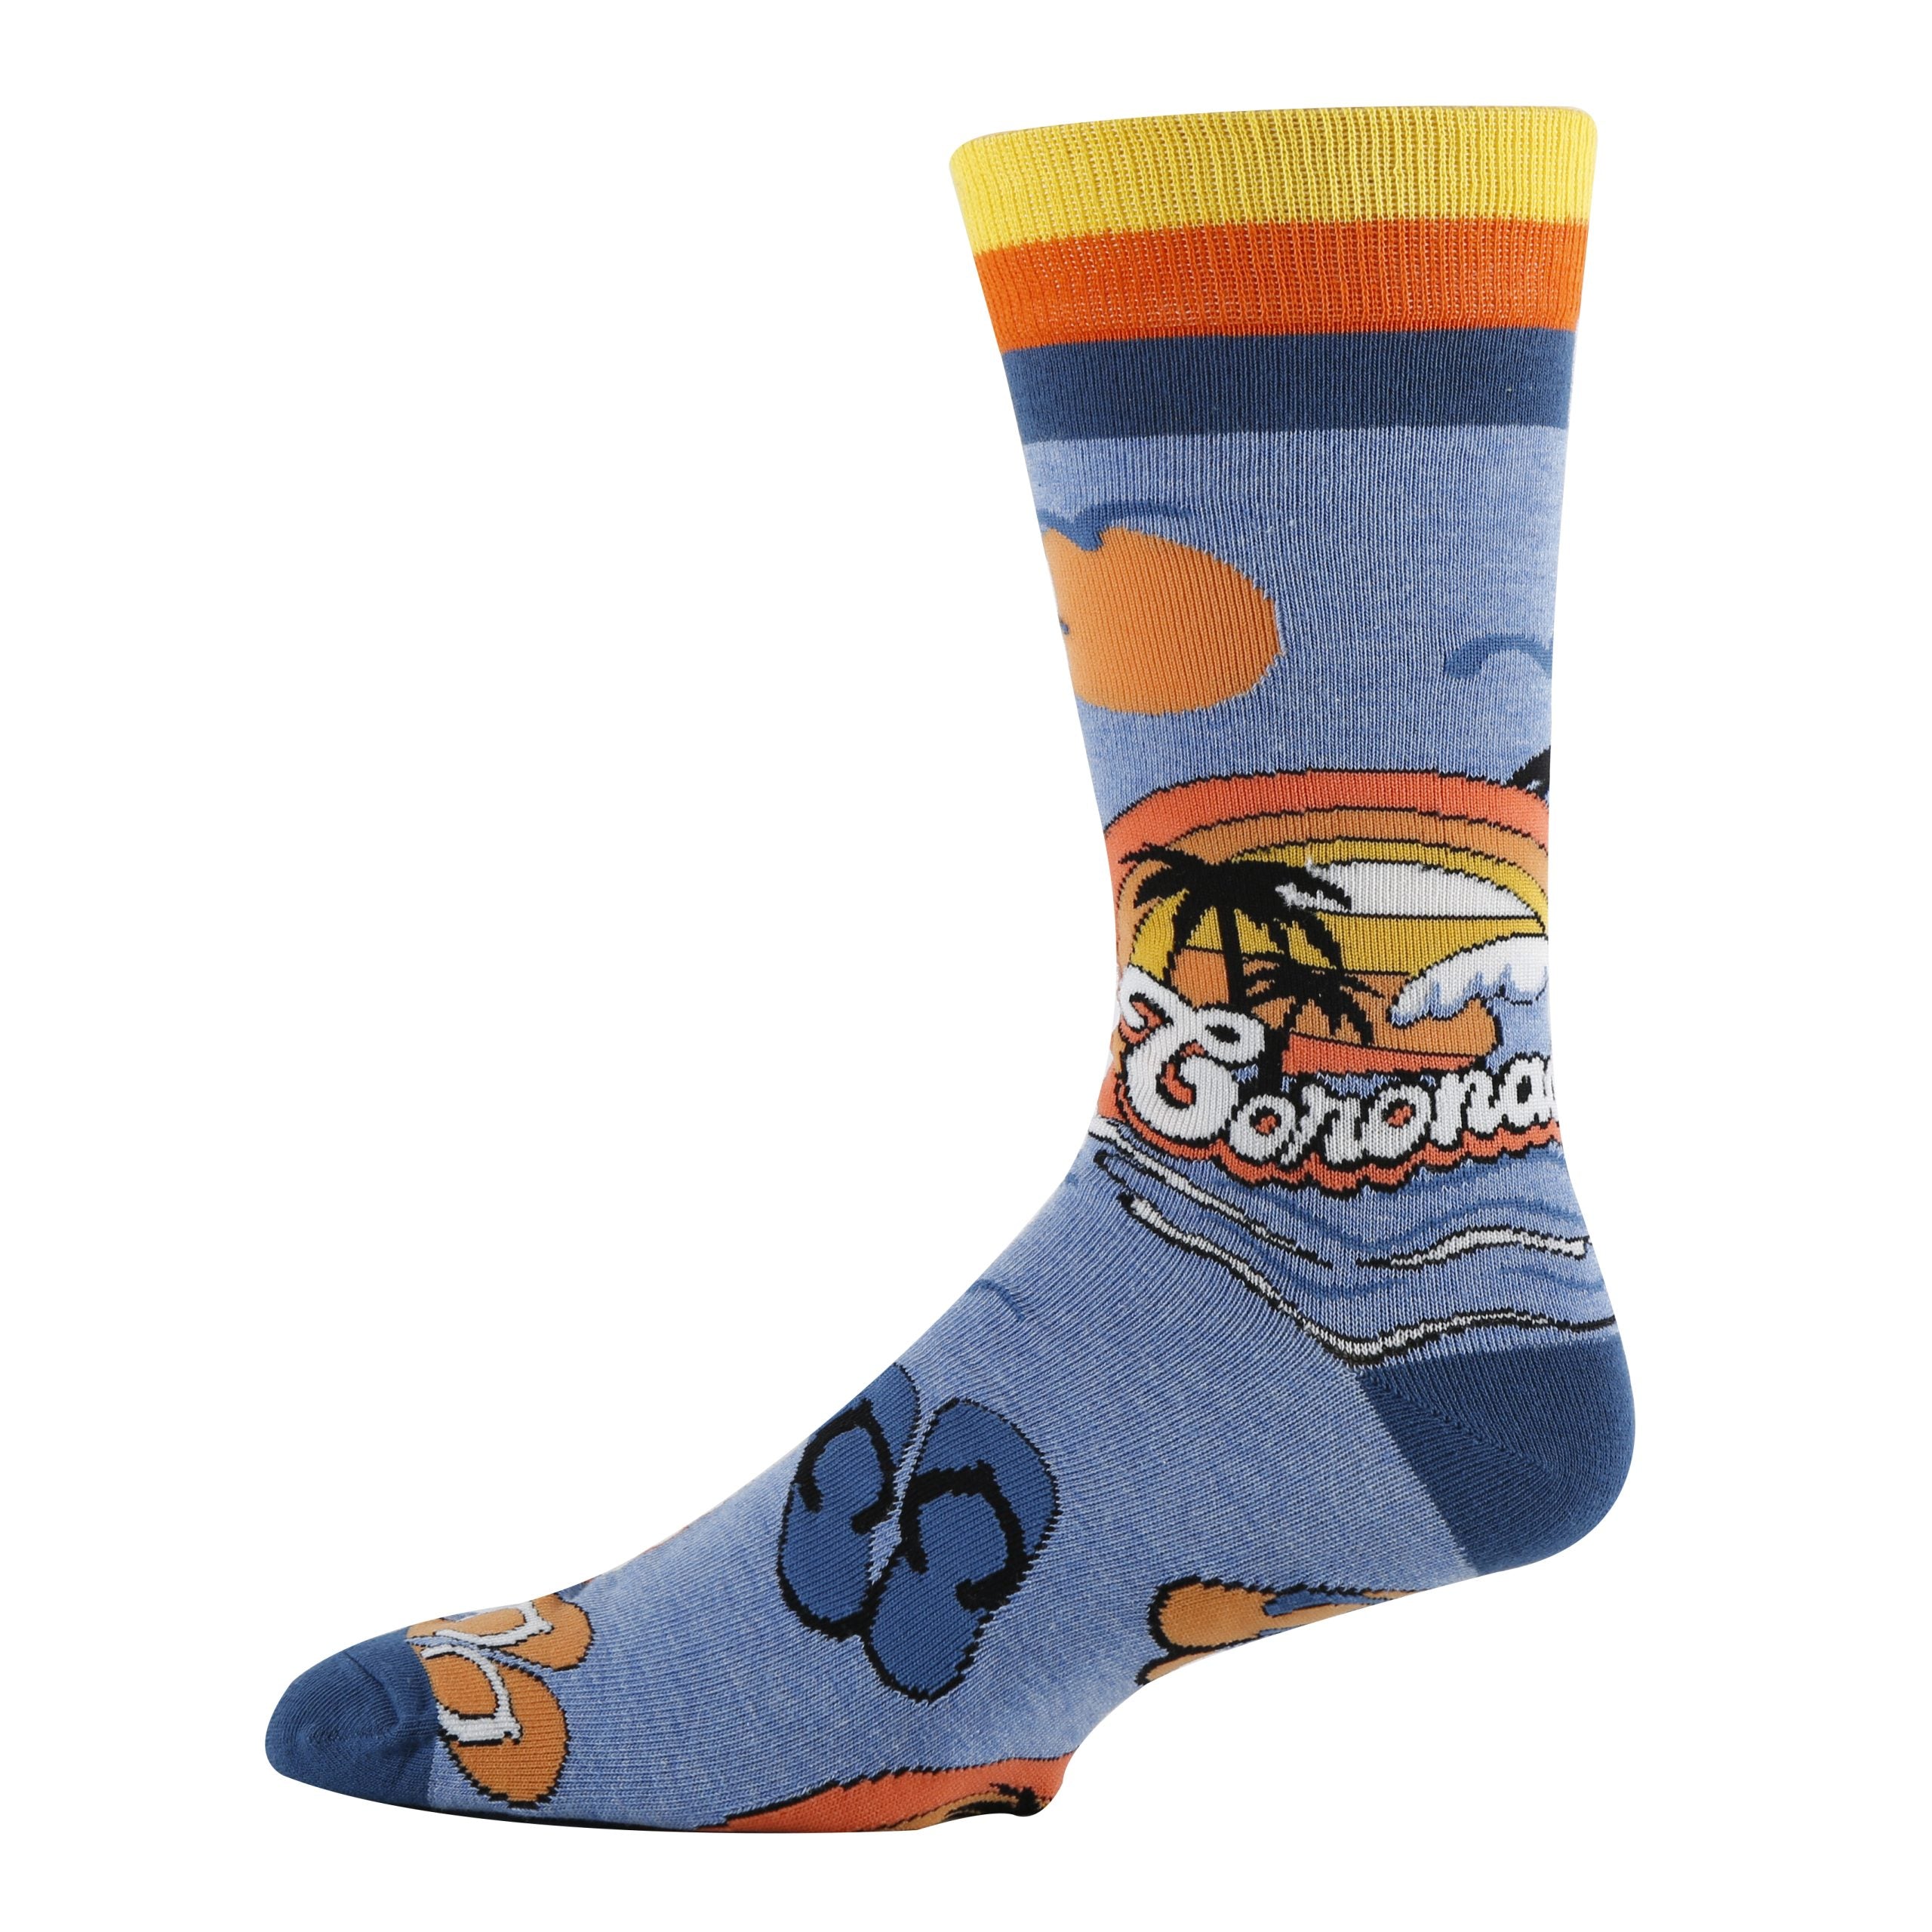 Coronado Socks